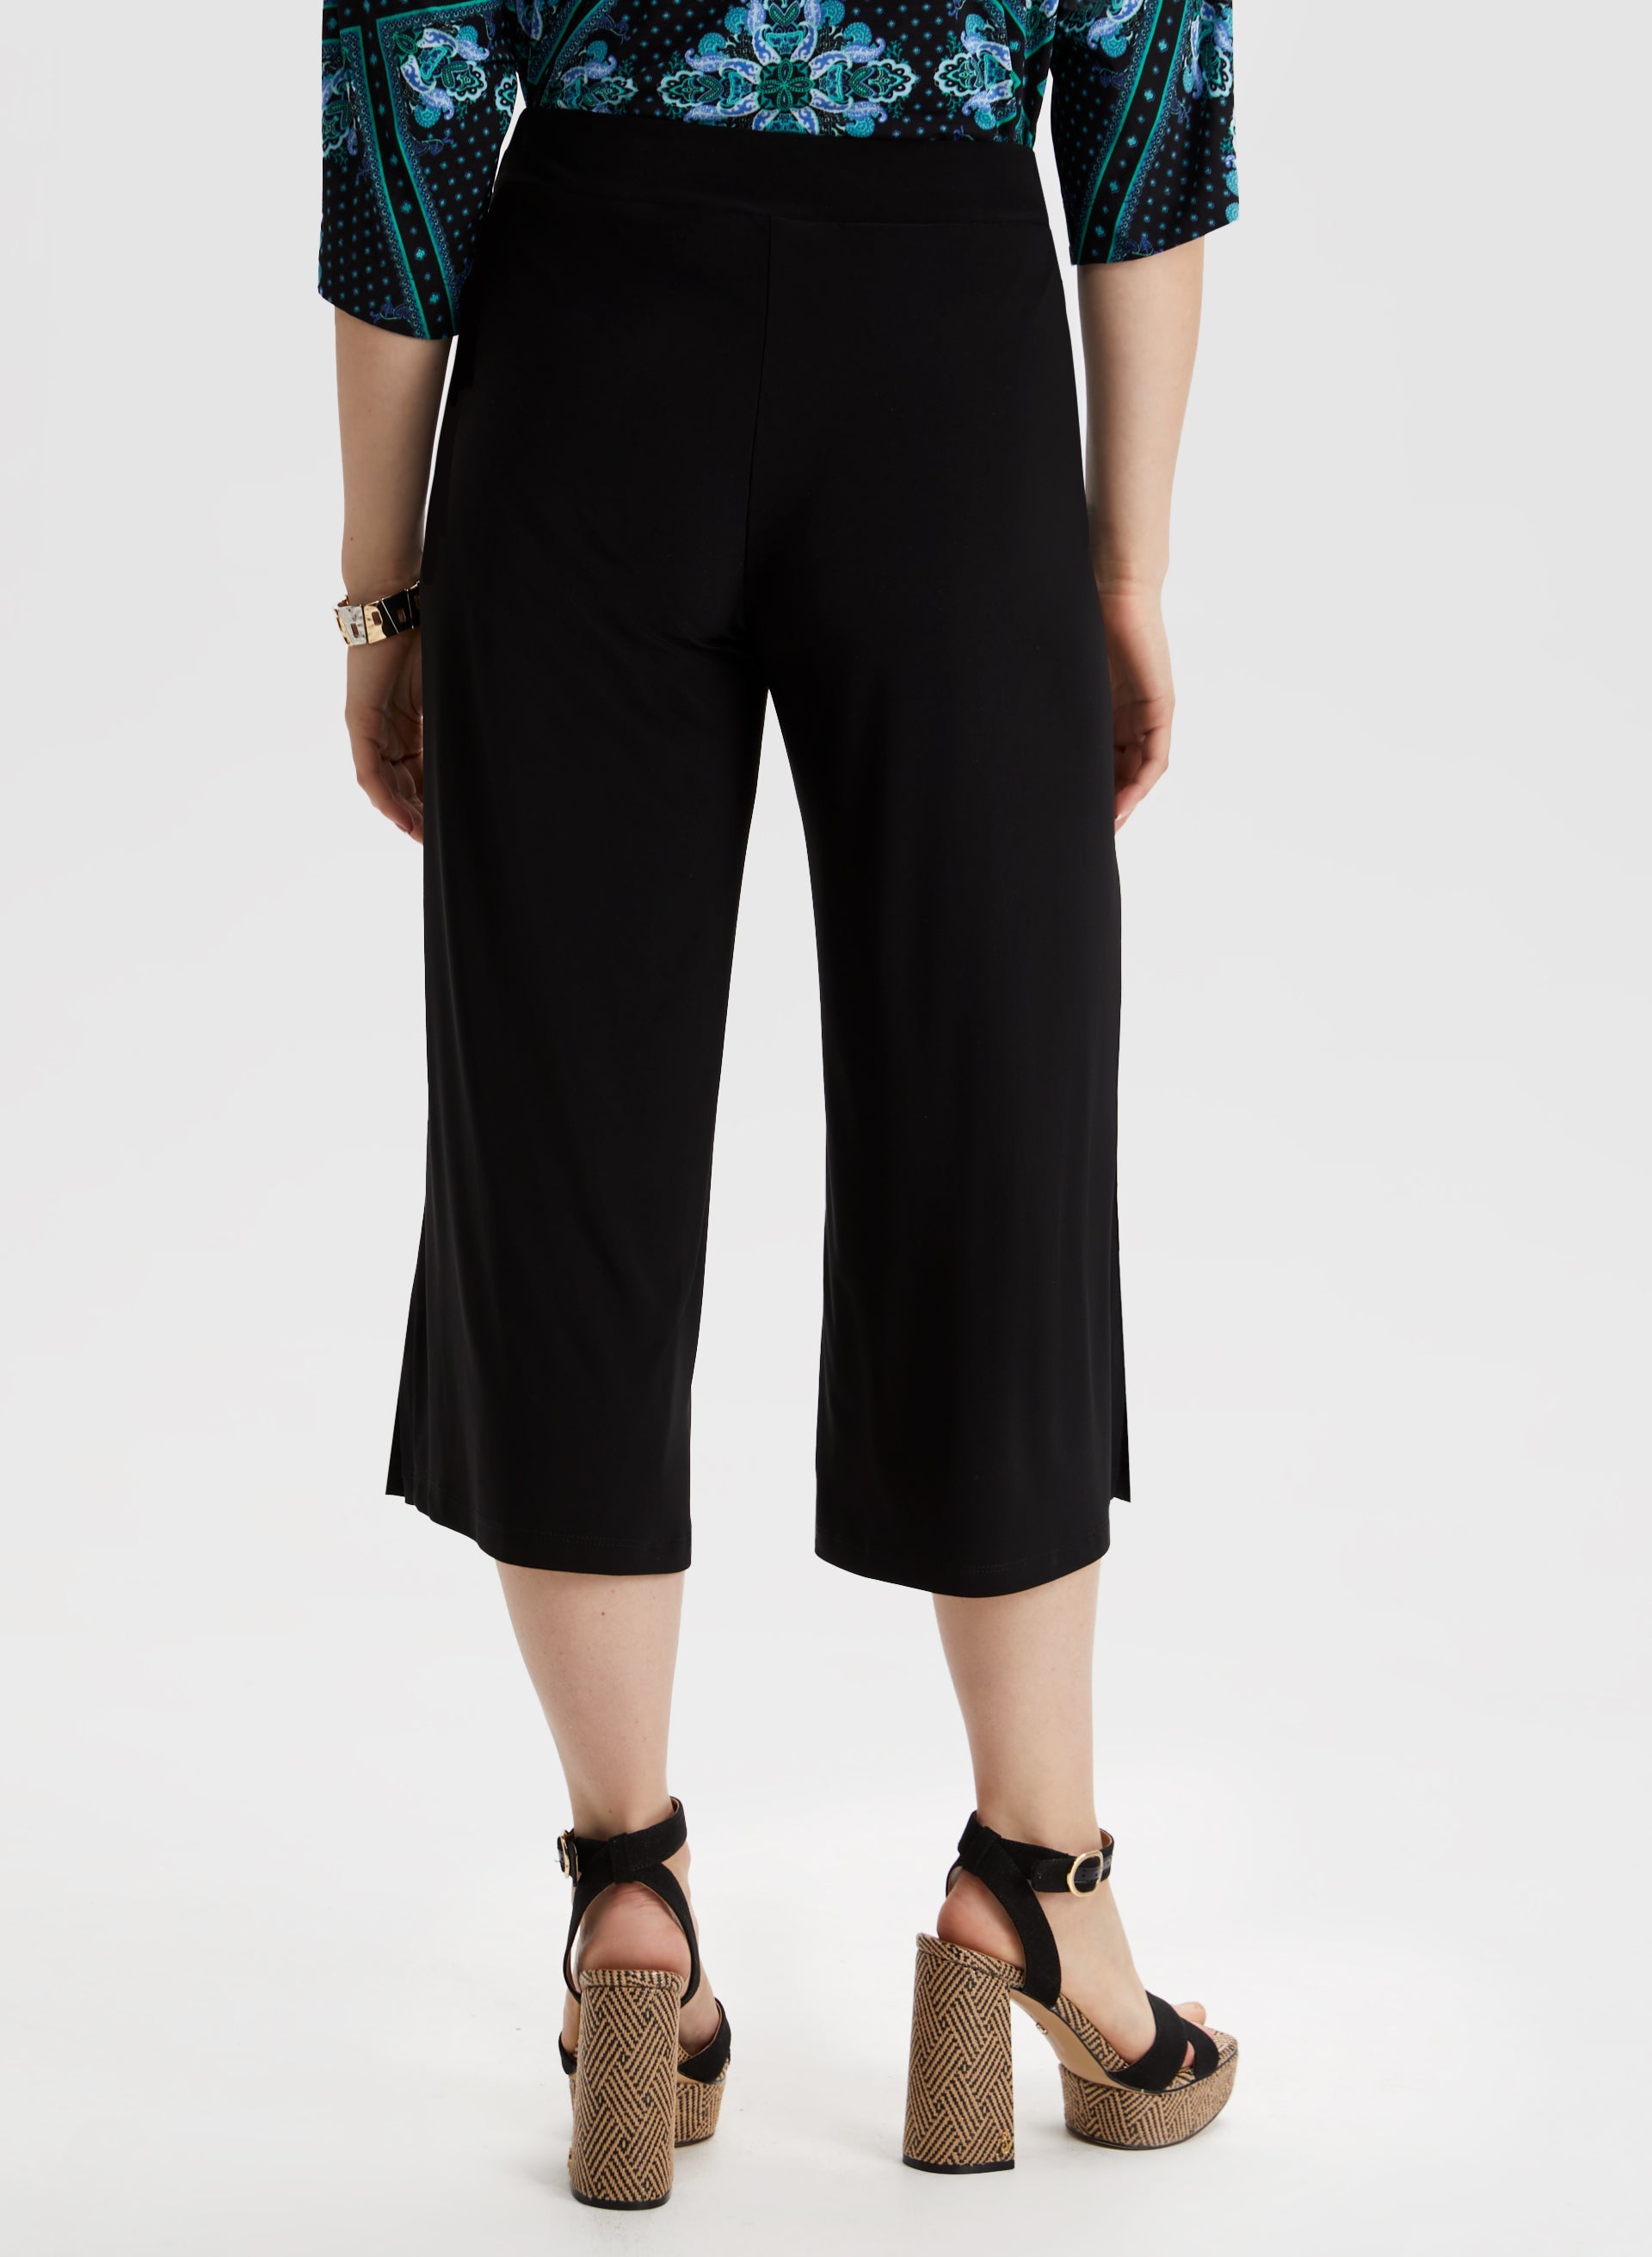 Style & Co Women's Petite Pull-On Capri Pants (14 Petite, New Uniform Blue)